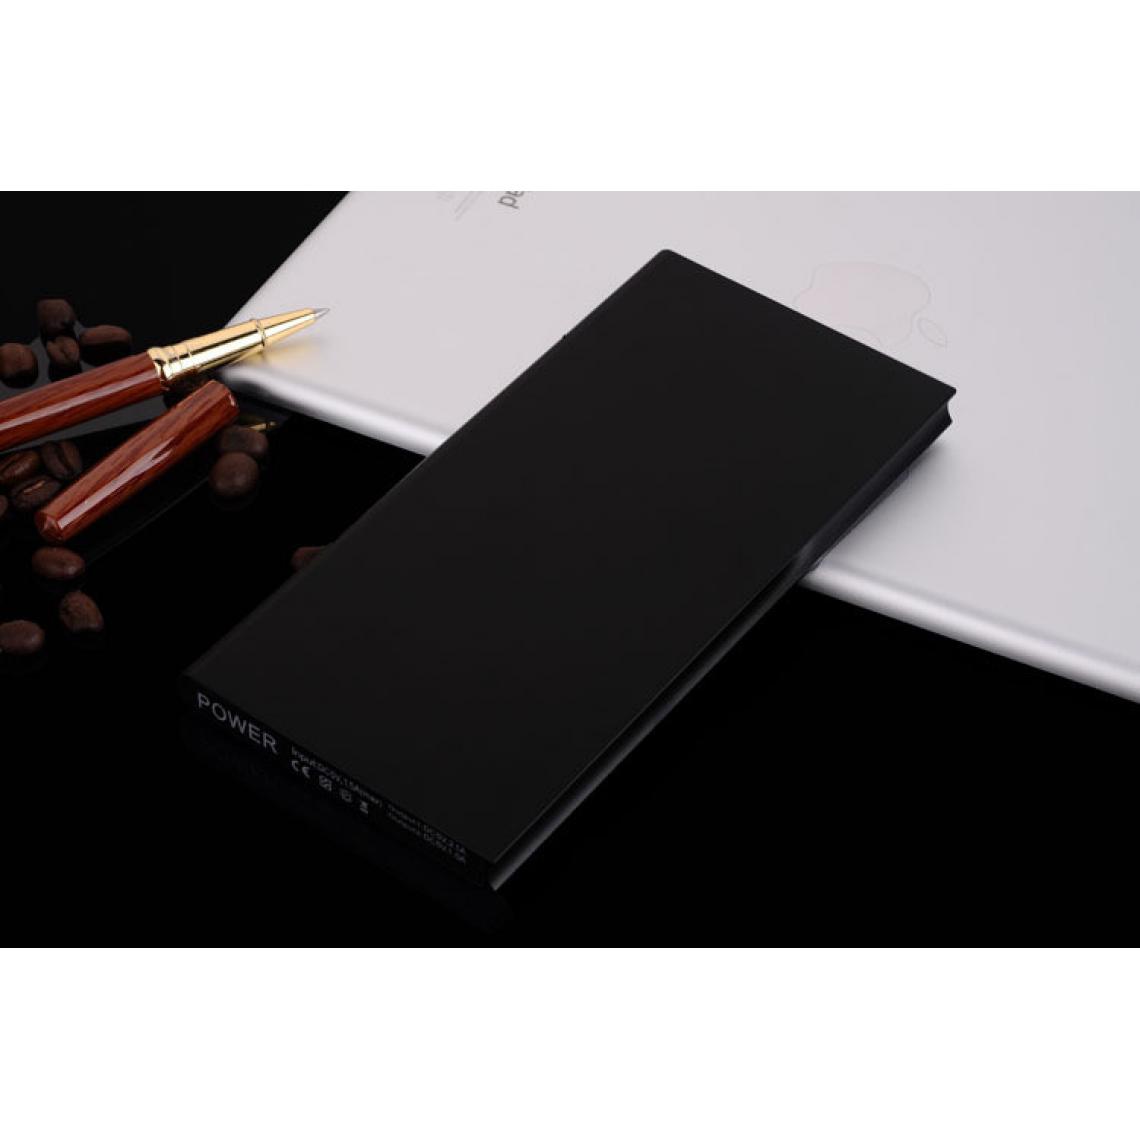 Shot - Batterie Externe Plate pour "IPHONE 12 Mini" Chargeur Power Bank 6000mAh 2 Port USB (NOIR) - Chargeur secteur téléphone